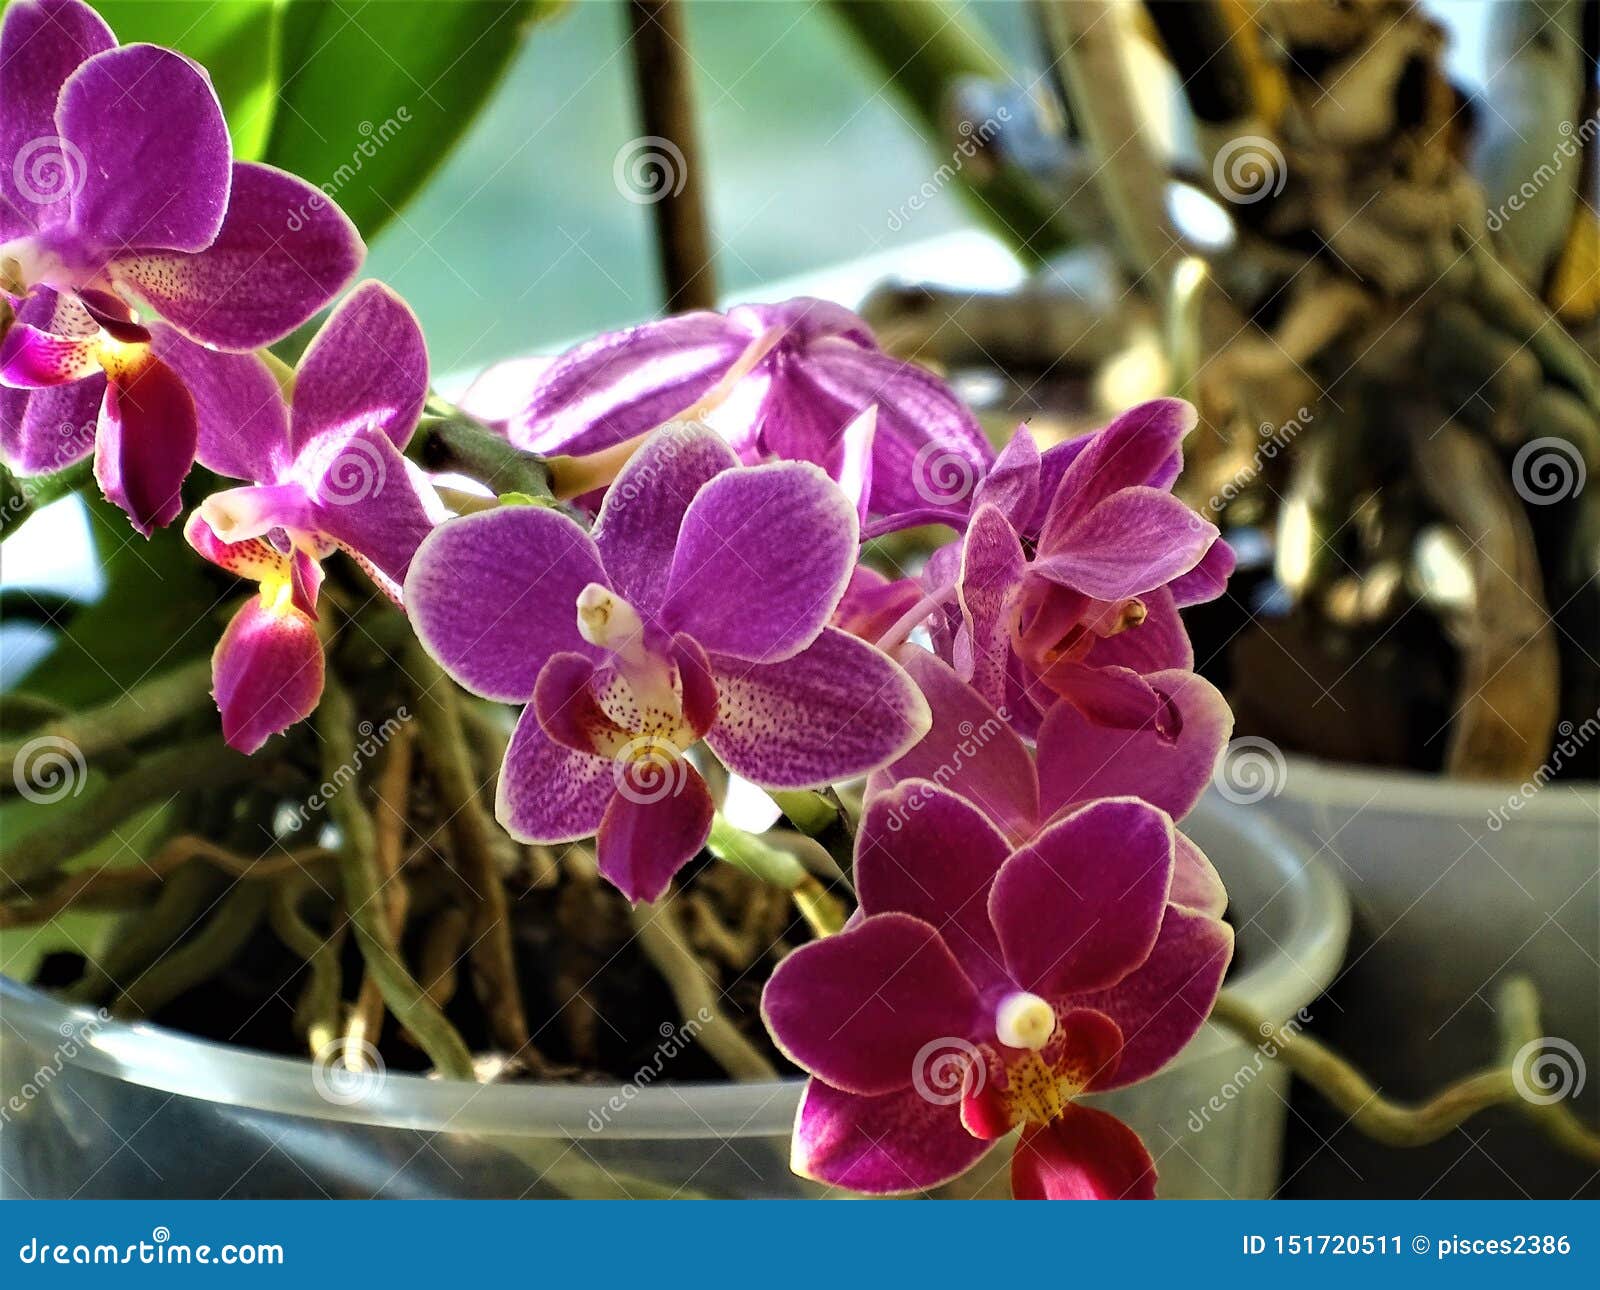 Close-up of Doritaenopsis Sogo Perfume Orchid Blossom Stock Image - Image  of hybrid, doritis: 151720511